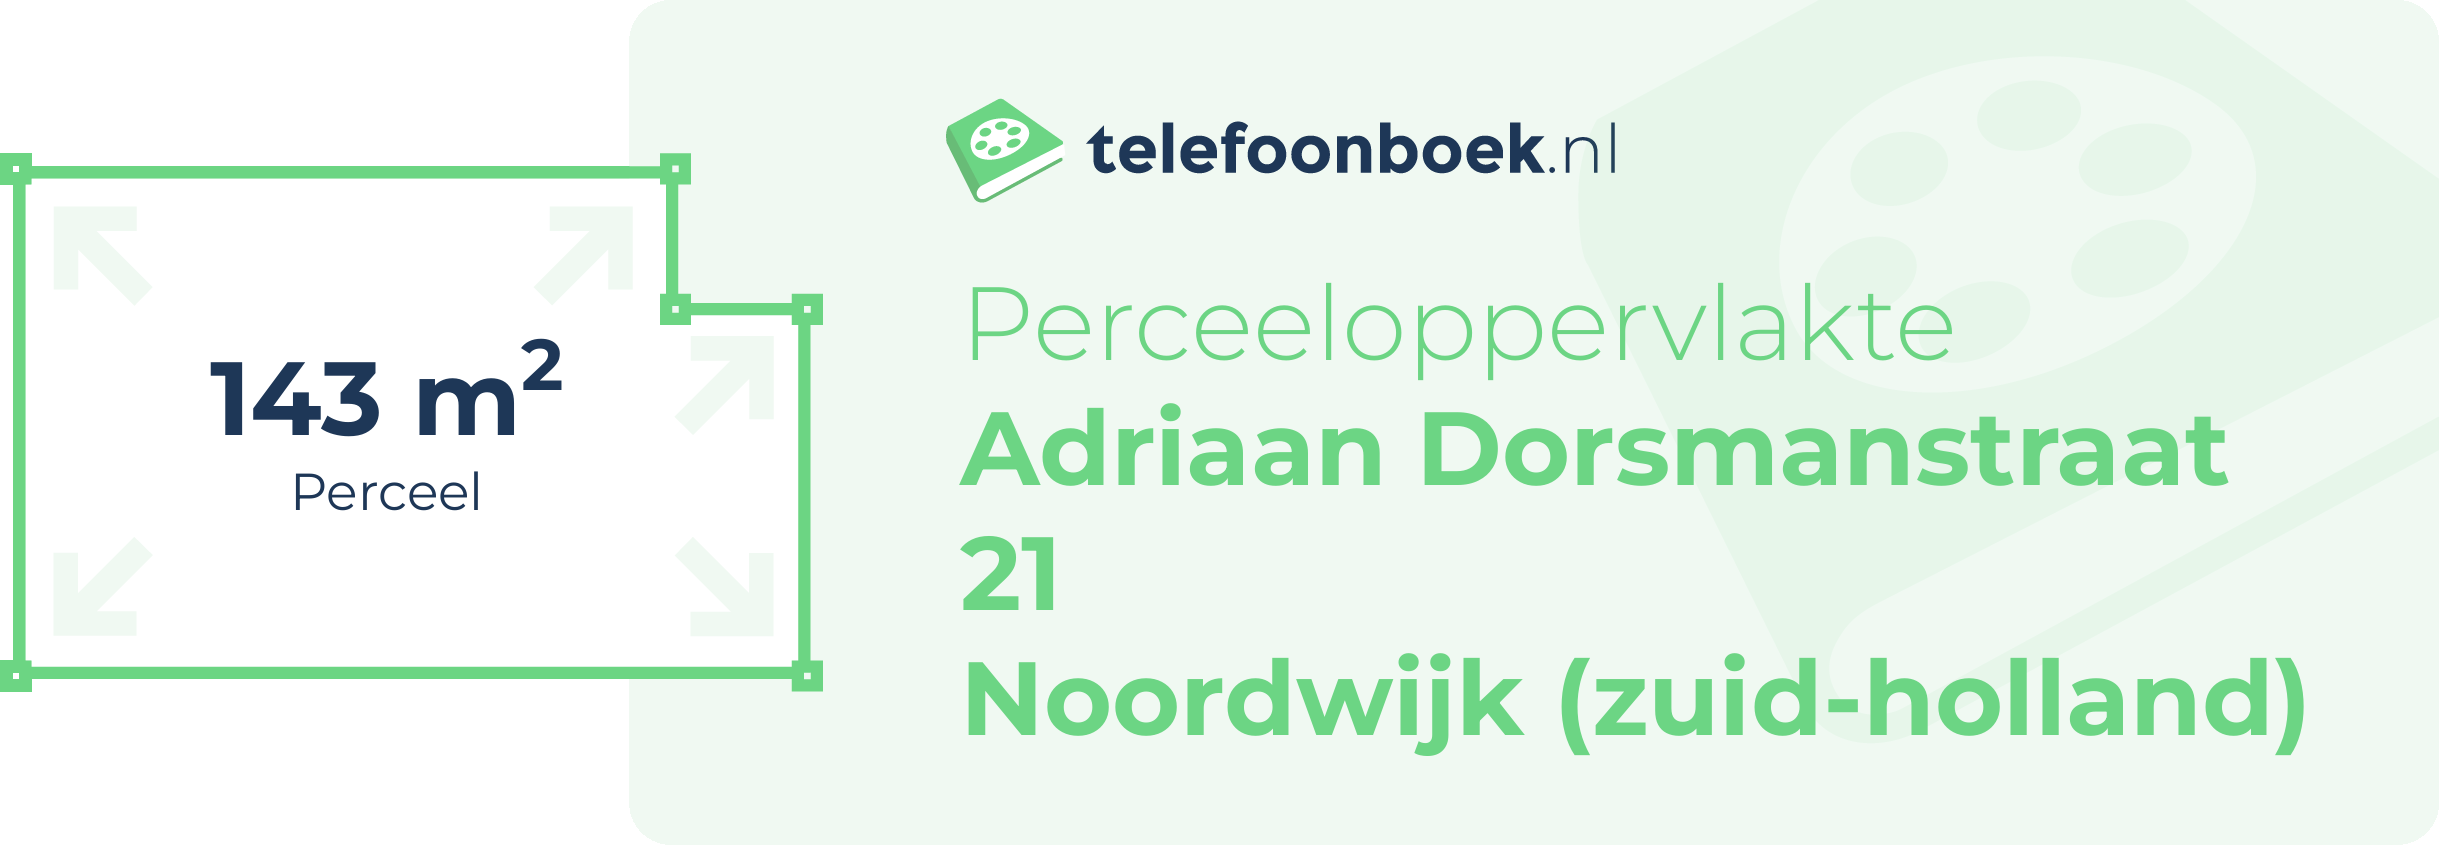 Perceeloppervlakte Adriaan Dorsmanstraat 21 Noordwijk (Zuid-Holland)